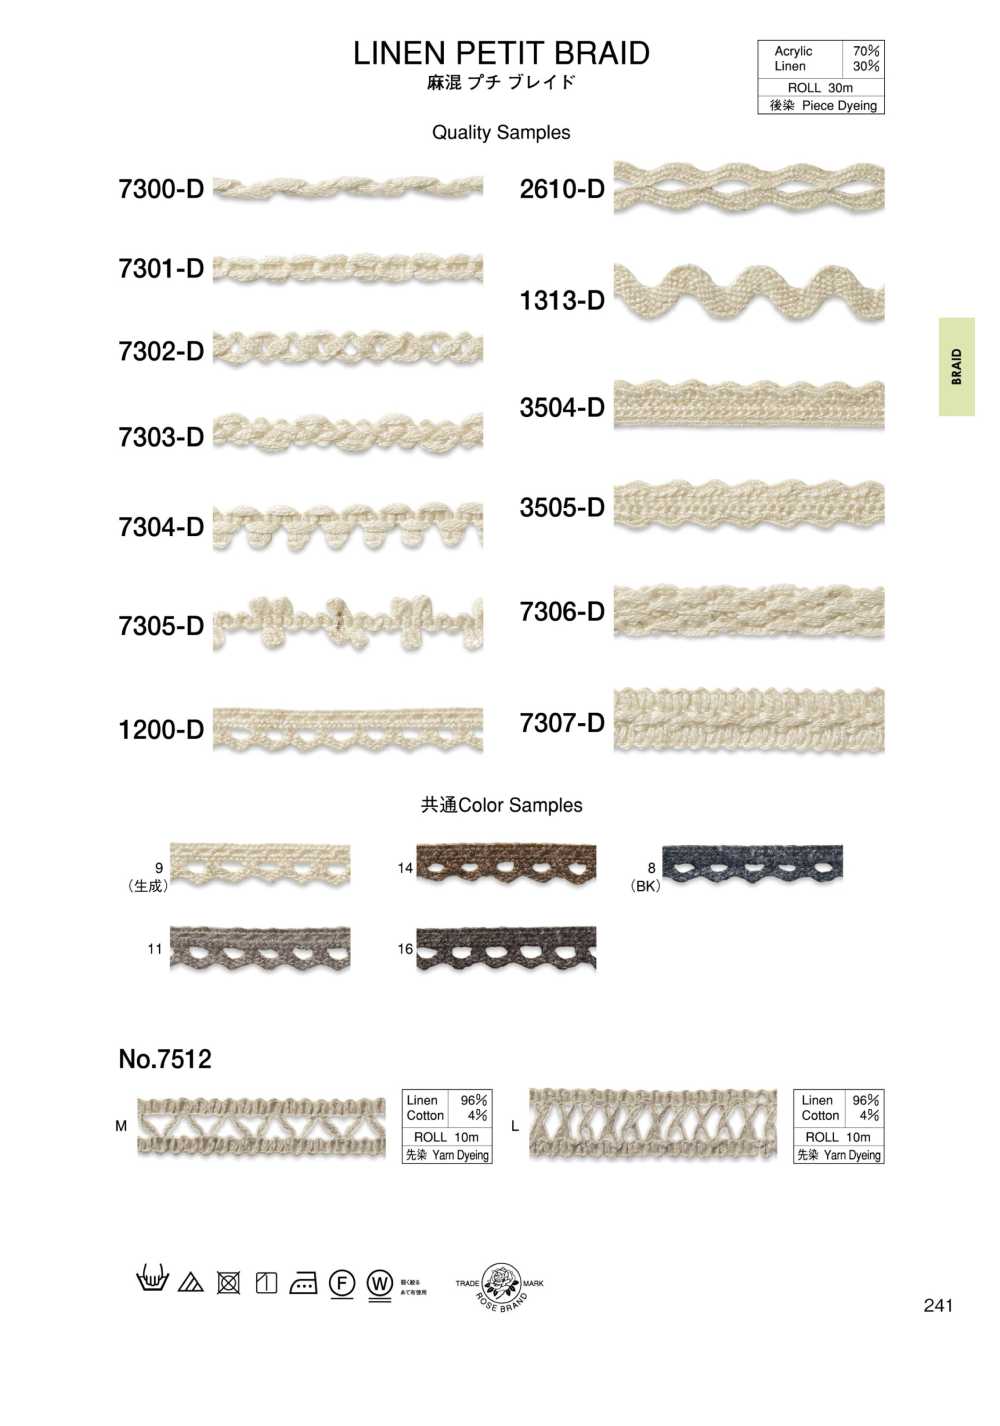 7301-D Linen Blend Petite Braid[Ribbon Tape Cord] ROSE BRAND (Marushin)